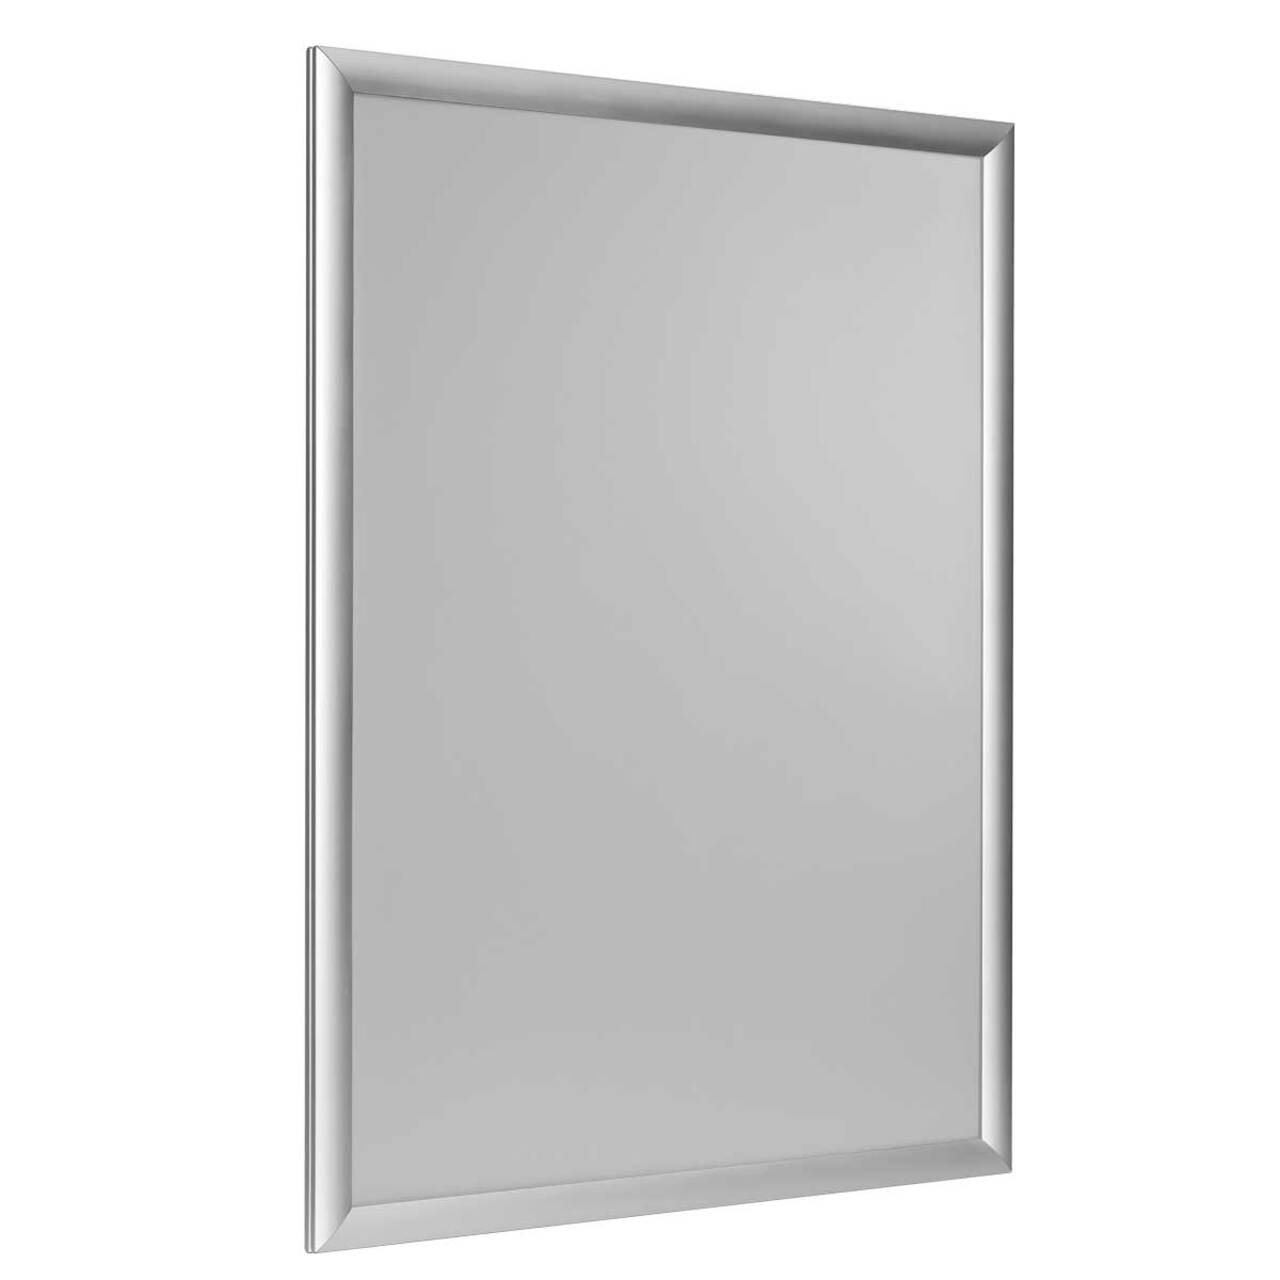 Window Frame 25, ramă click din aluminiu pentru ferestre, JJ DISPLAYS, dimensiuni la cerere